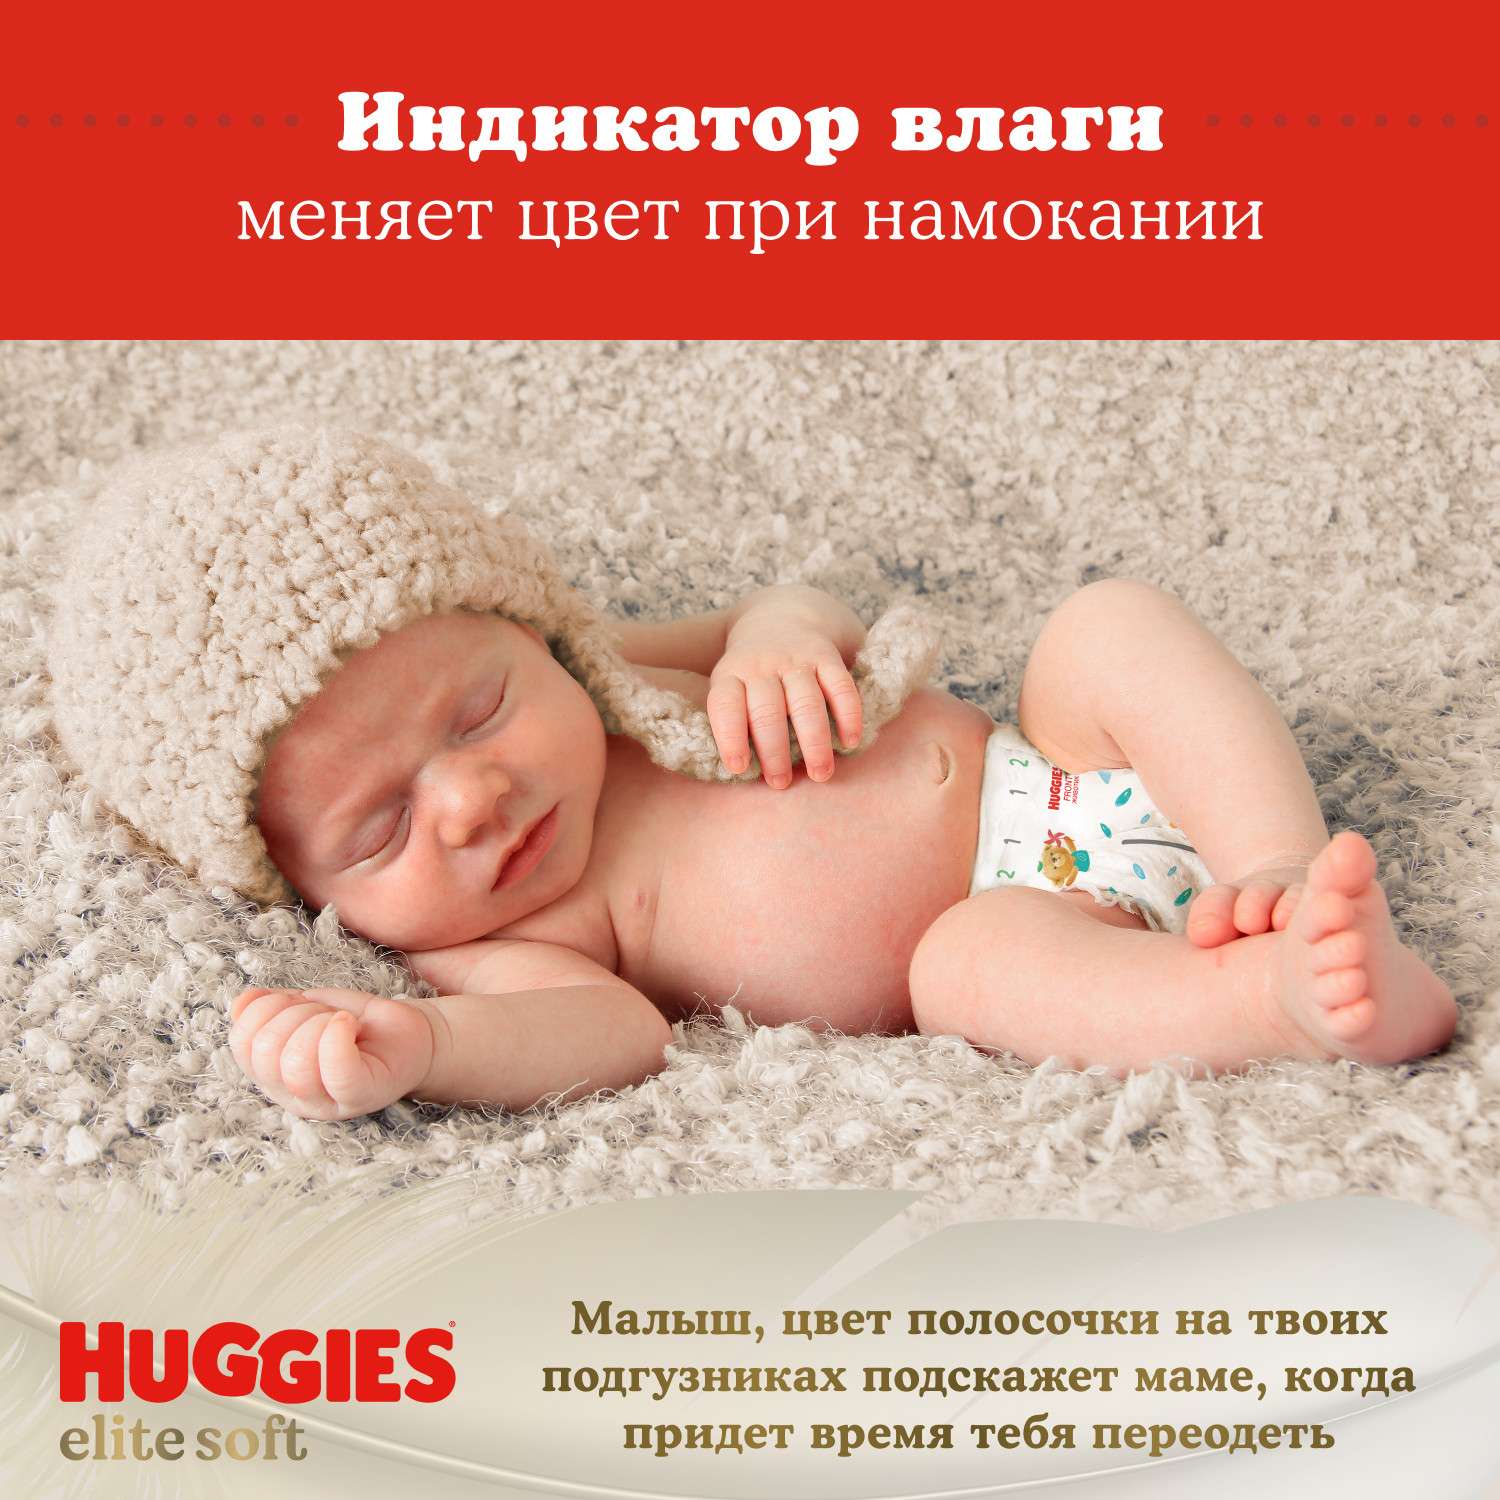 Подгузники Huggies Elite Soft для новорожденных 0 до 3.5кг 25шт - фото 14